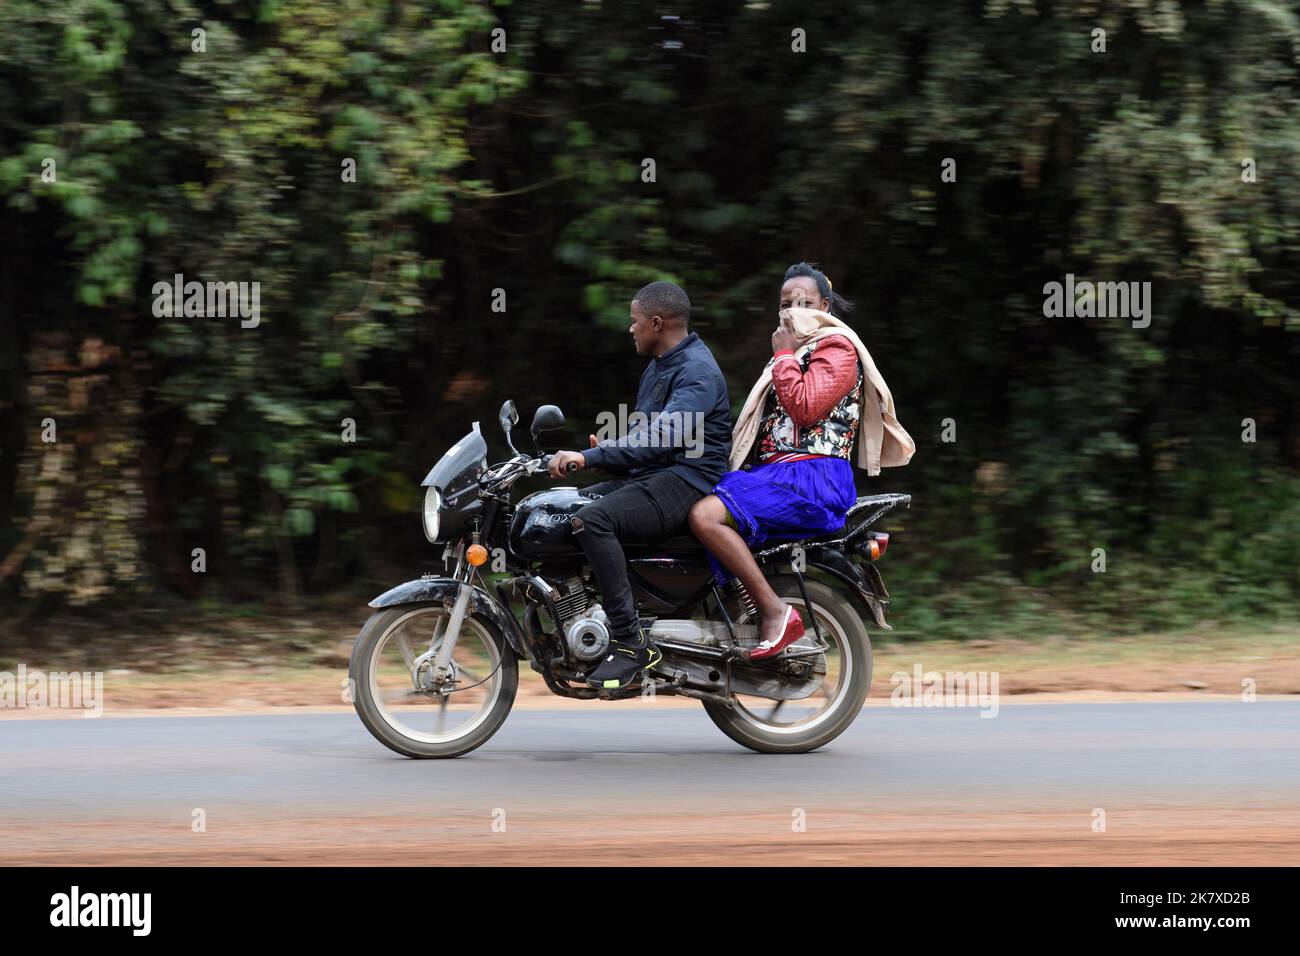 Ein Sozius, der auf Motorradtaxis fährt, bekannt als Boda Boda, in Ostafrika. Boda bodas sind ein wichtiger Teil des Verkehrsnetzes und werden genutzt Stockfoto